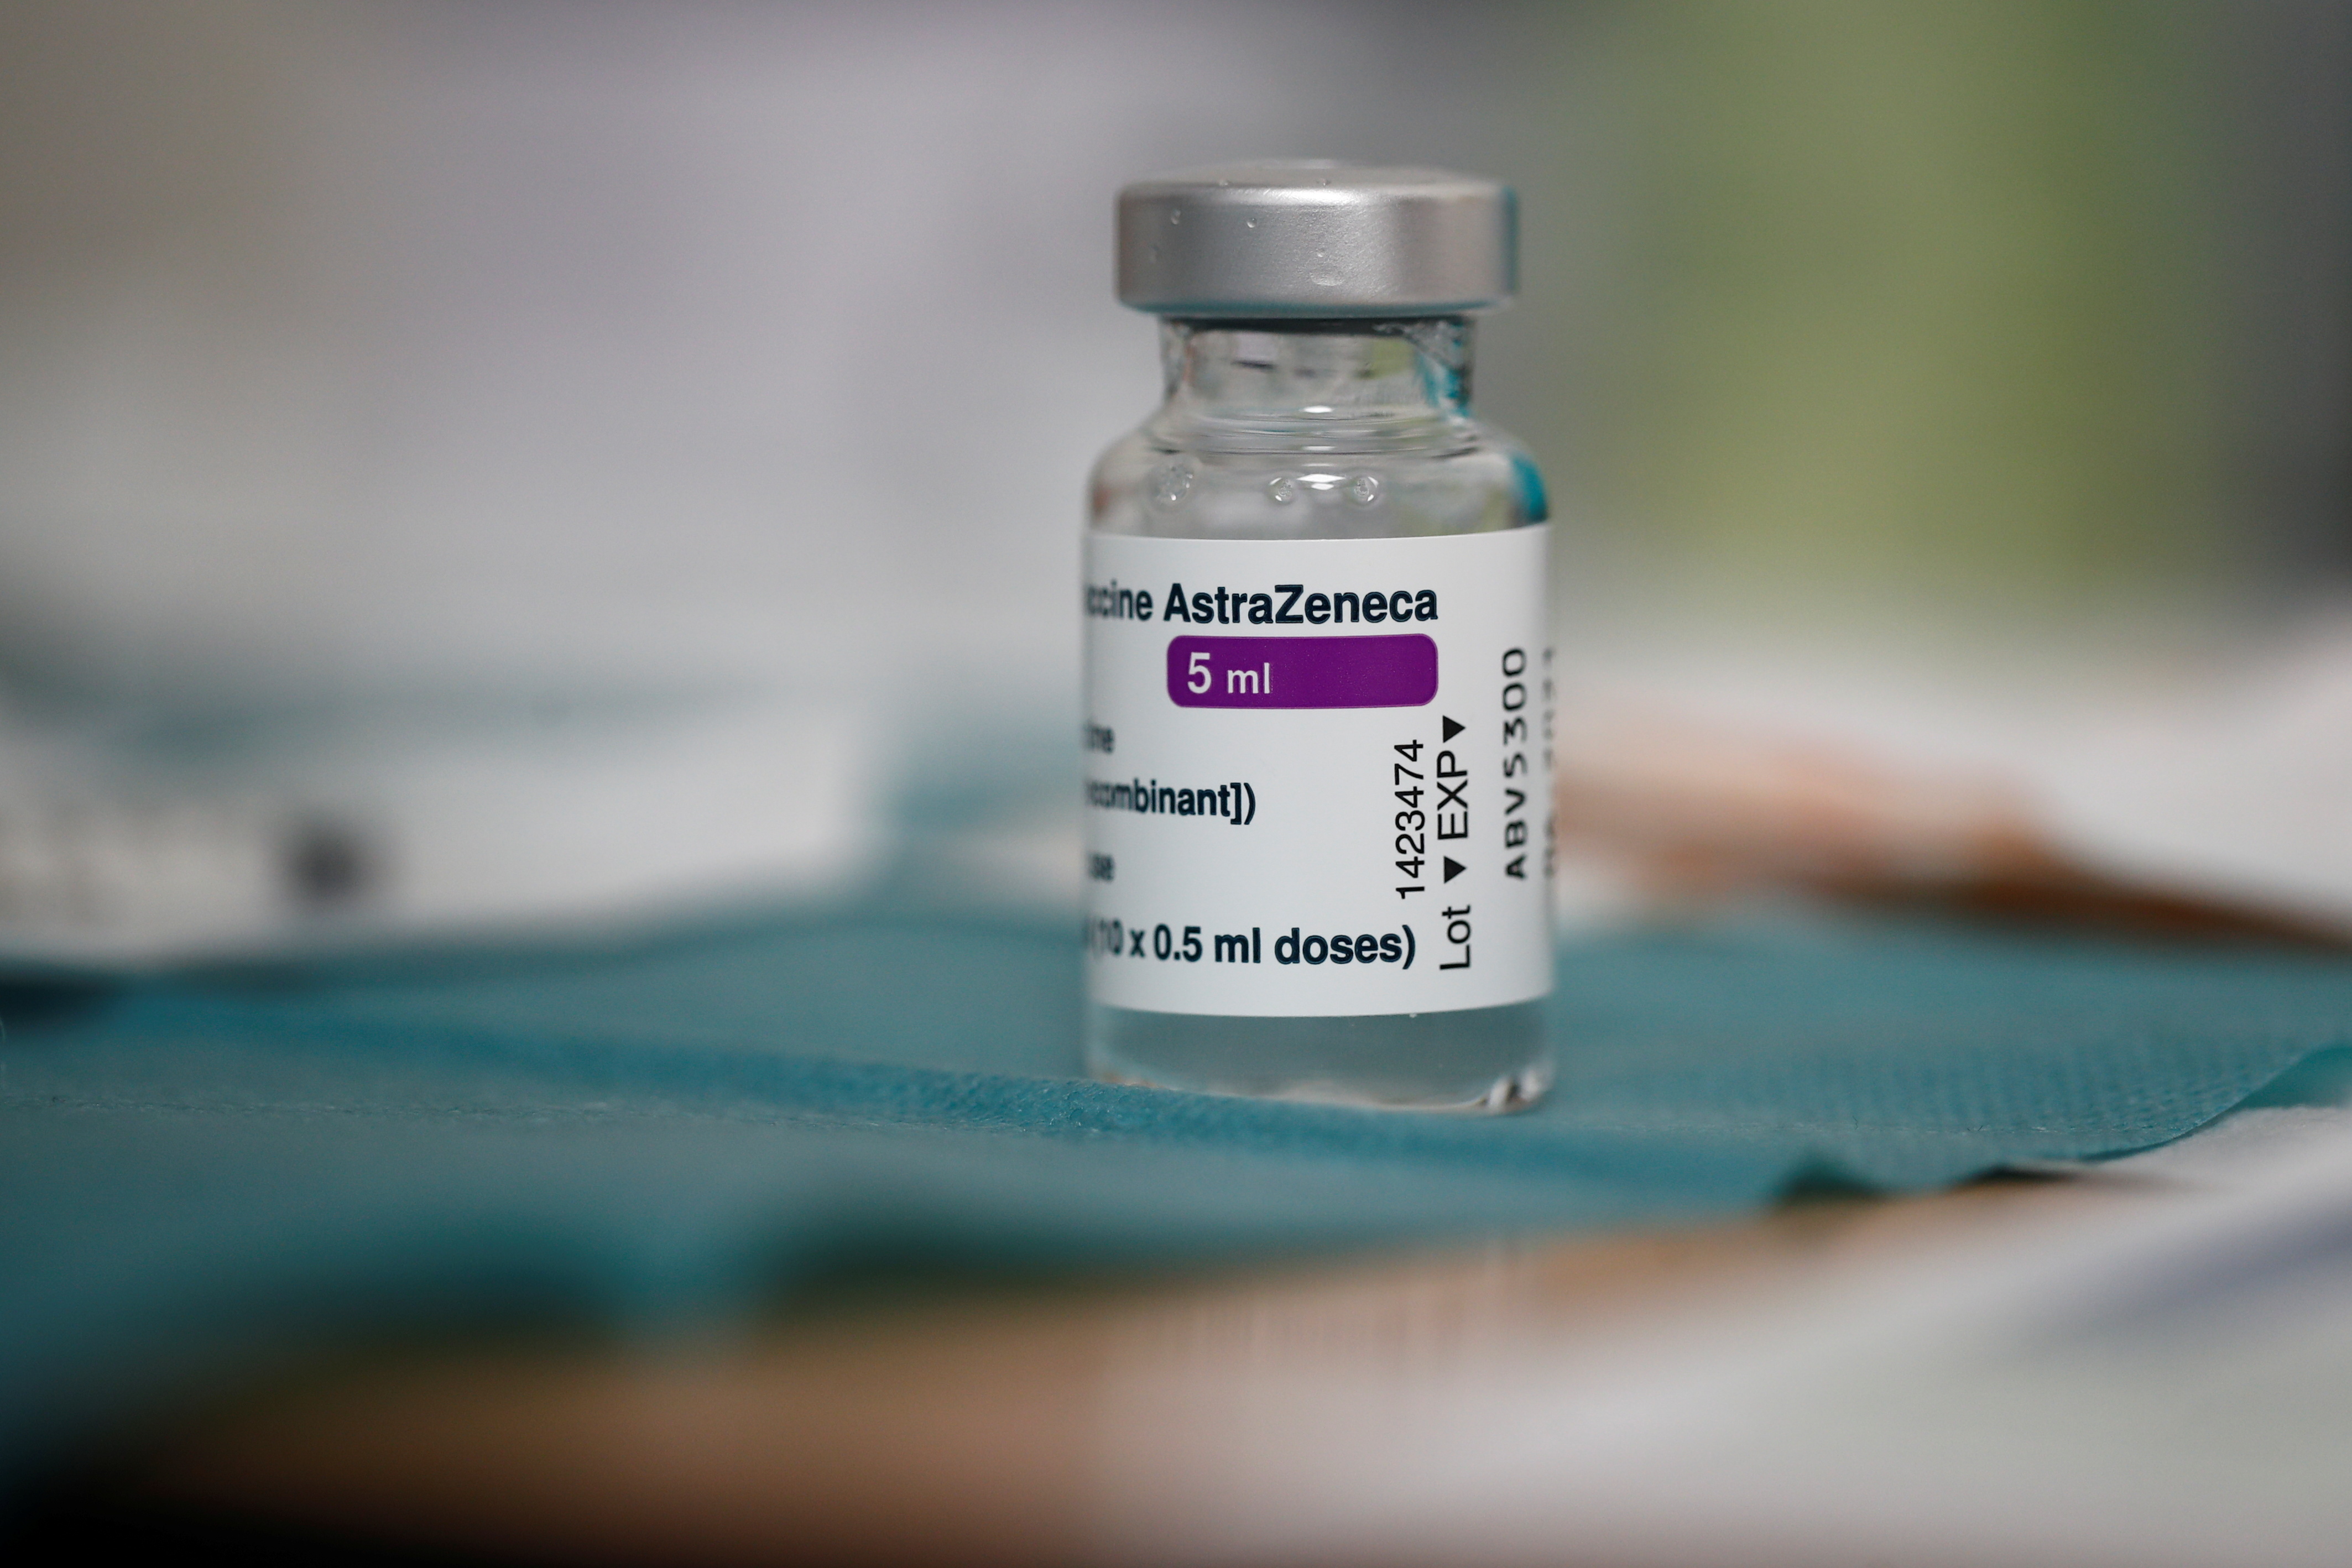 La Agencia Europea del Medicamento confirma “posible vínculo” AstraZeneca con casos raros de coagulación